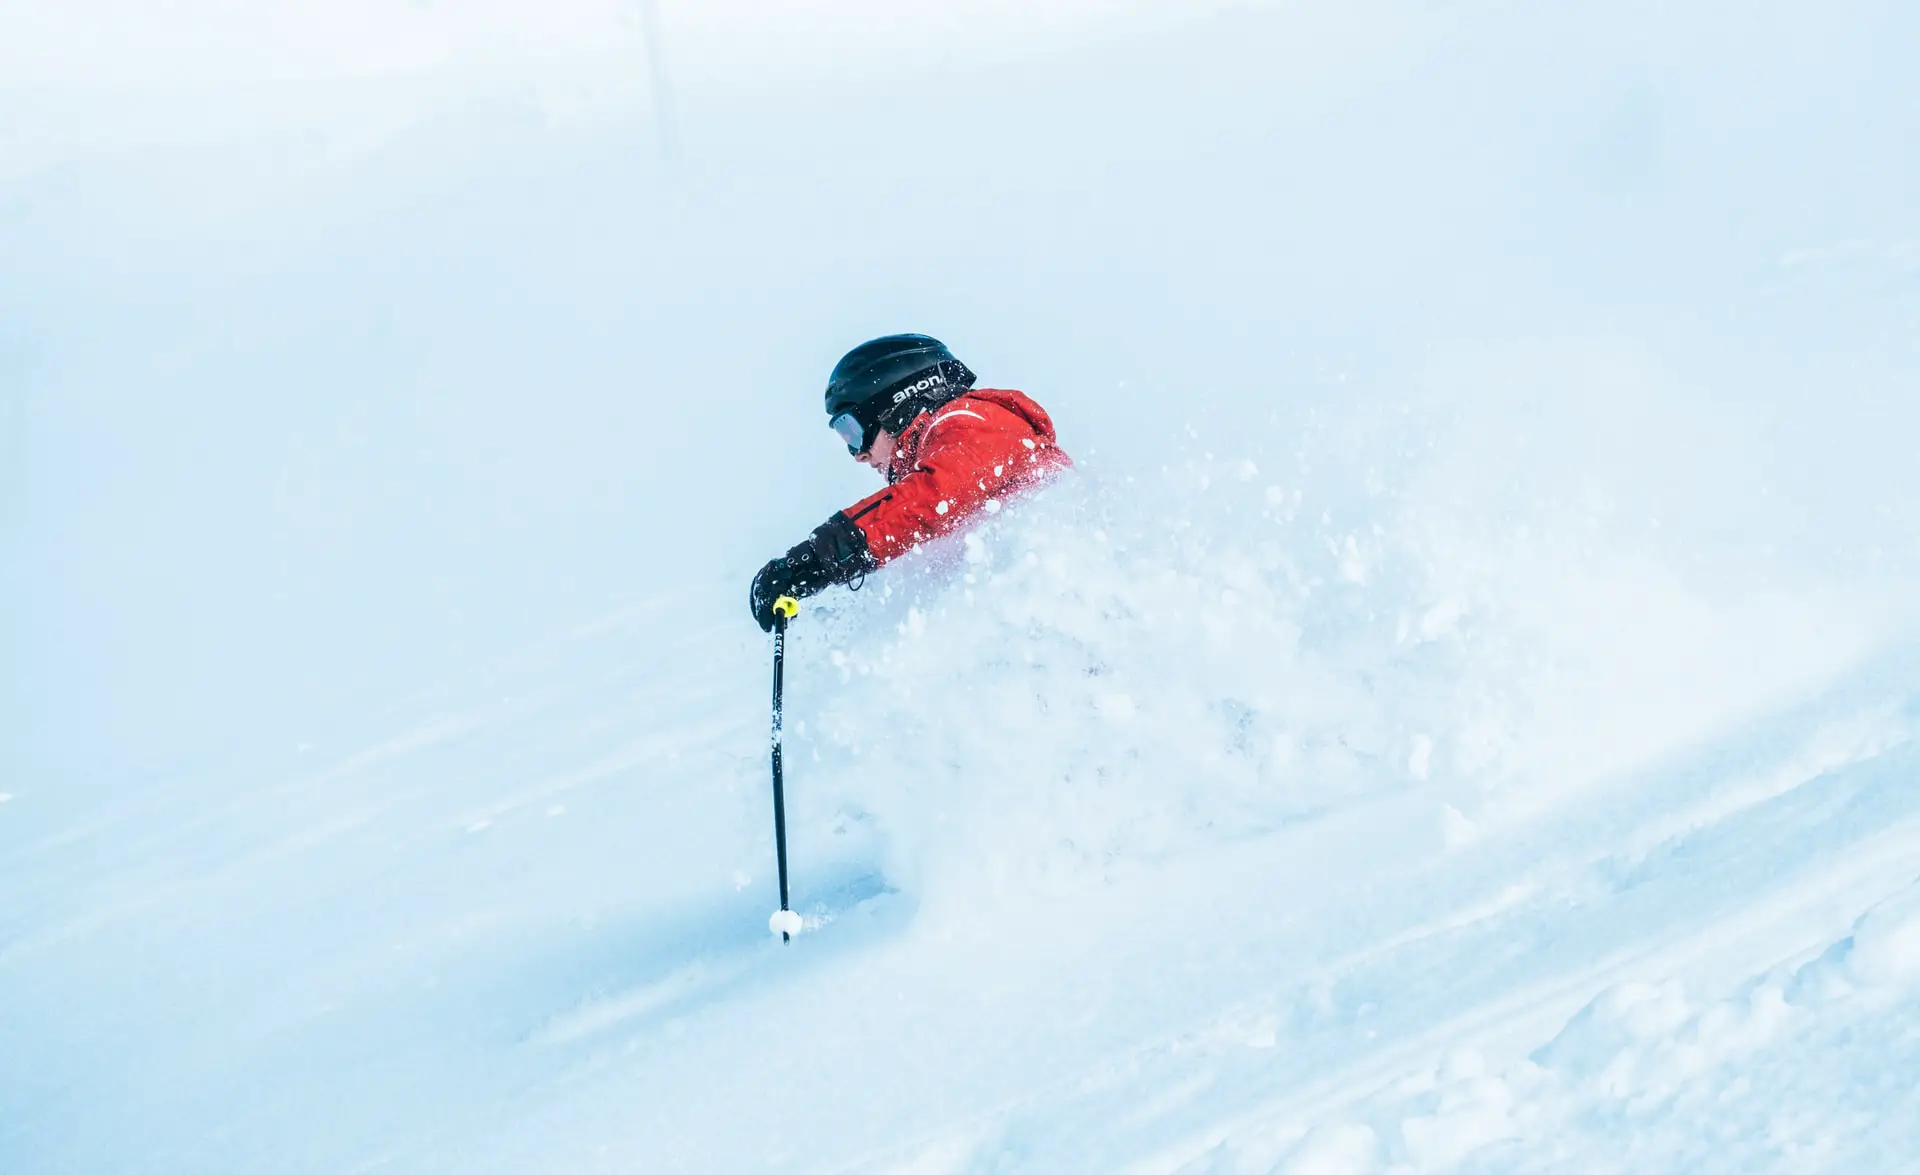 Skistöcke helfen auf viele Arten beim Skifahren